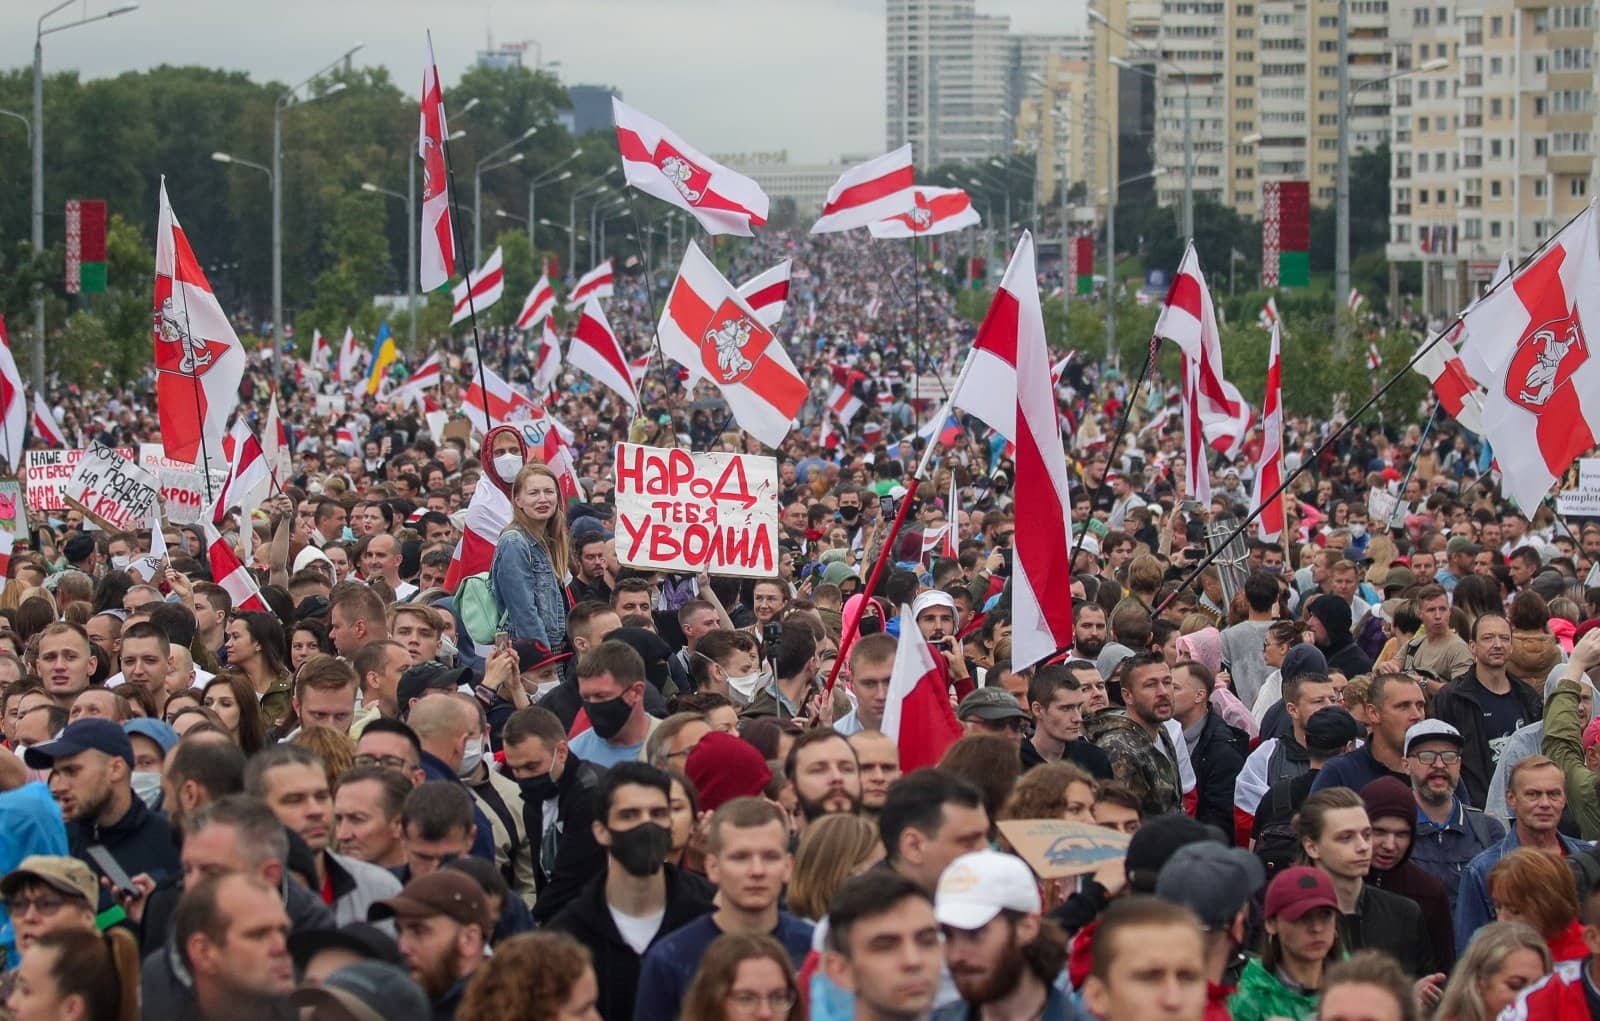 Официальные власти Беларуси заявили, что протесты в стране финансировались “через криптовалюты и обменники”. Заглавный коллаж новости.